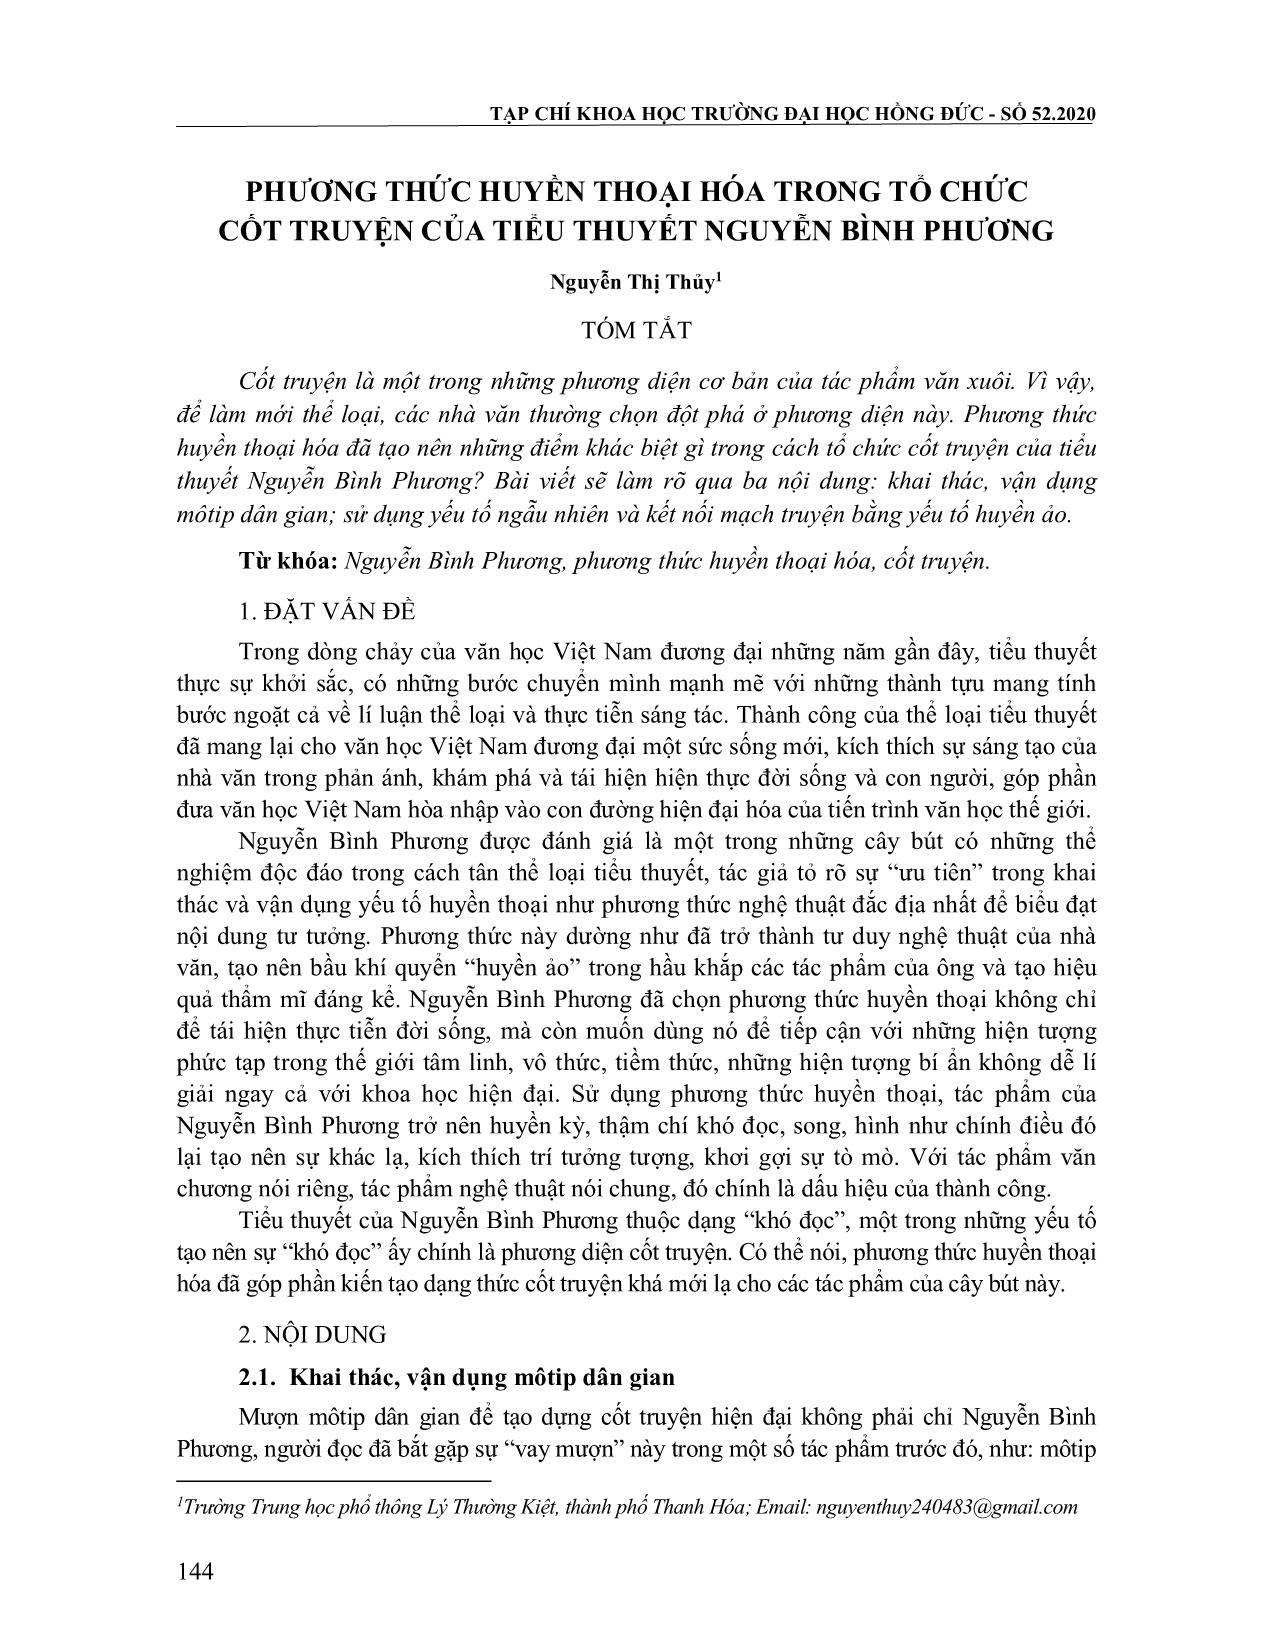 Phương thức huyền thoại hóa trong tổ chức cốt truyện của tiểu thuyết Nuyễn Bình Phương trang 1